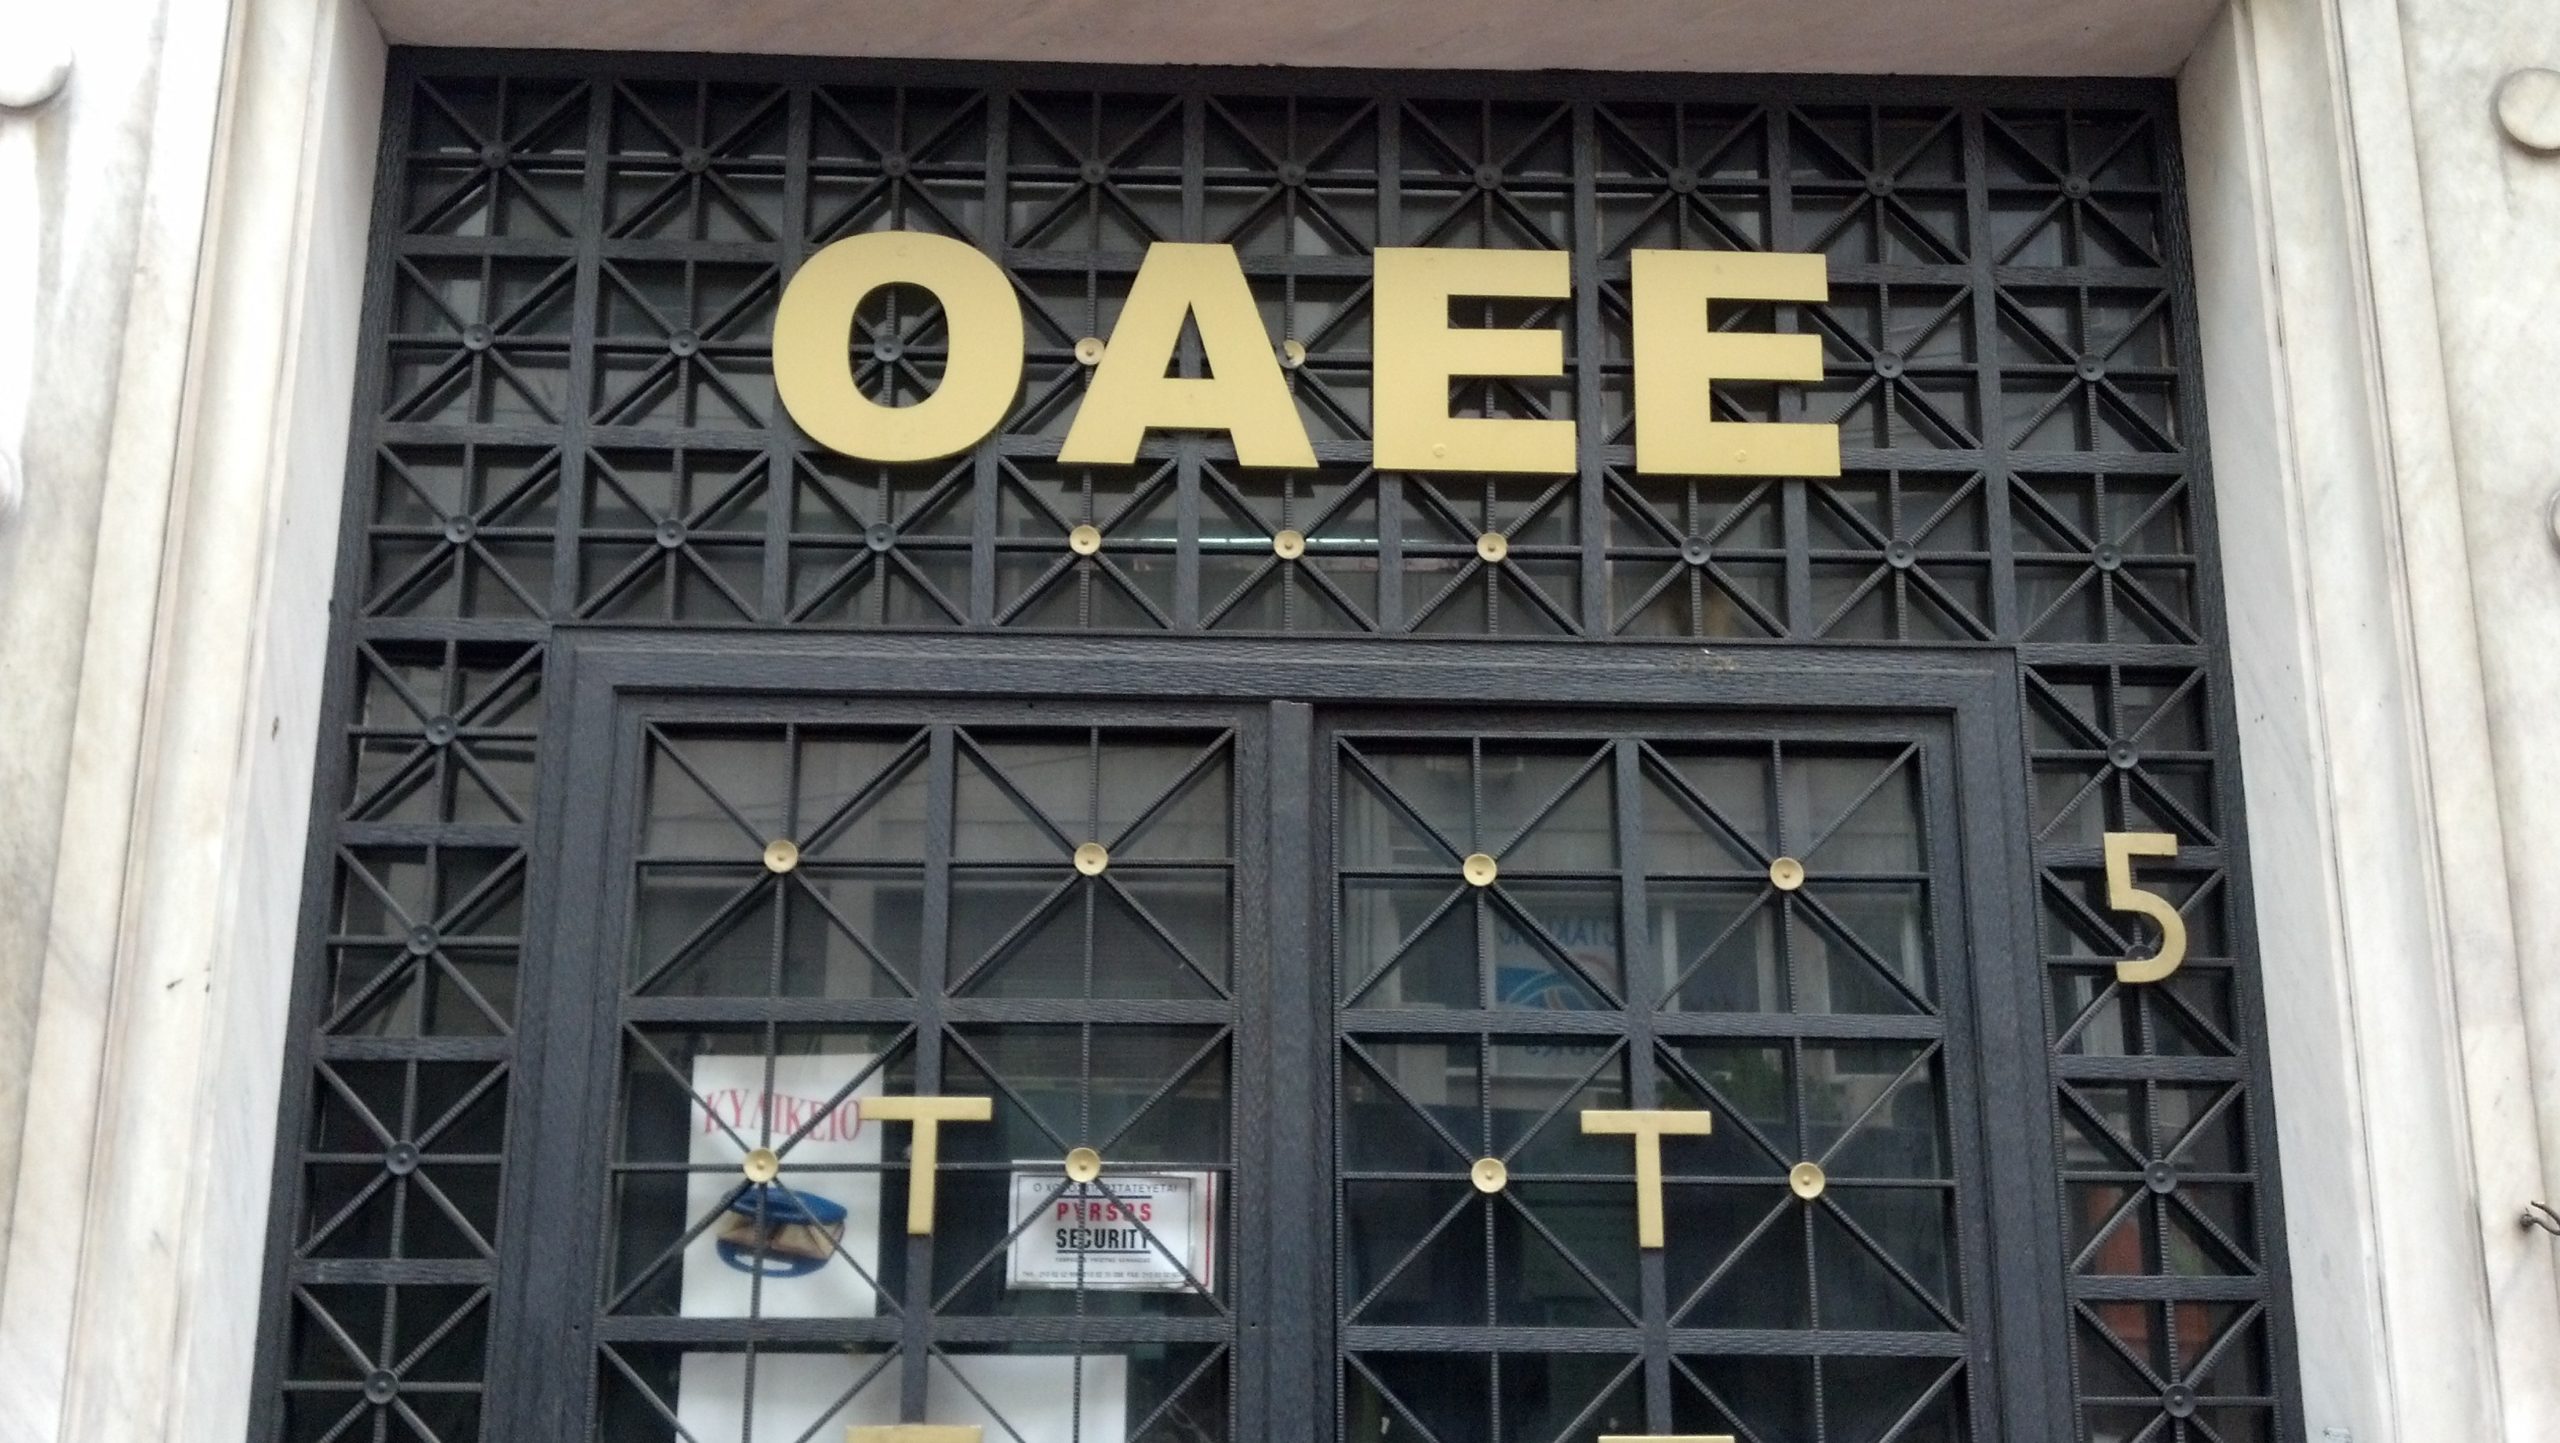 ΟΑΕΕ: Από σήμερα η υποβολή αιτήσεων για ρύθμιση οφειλών